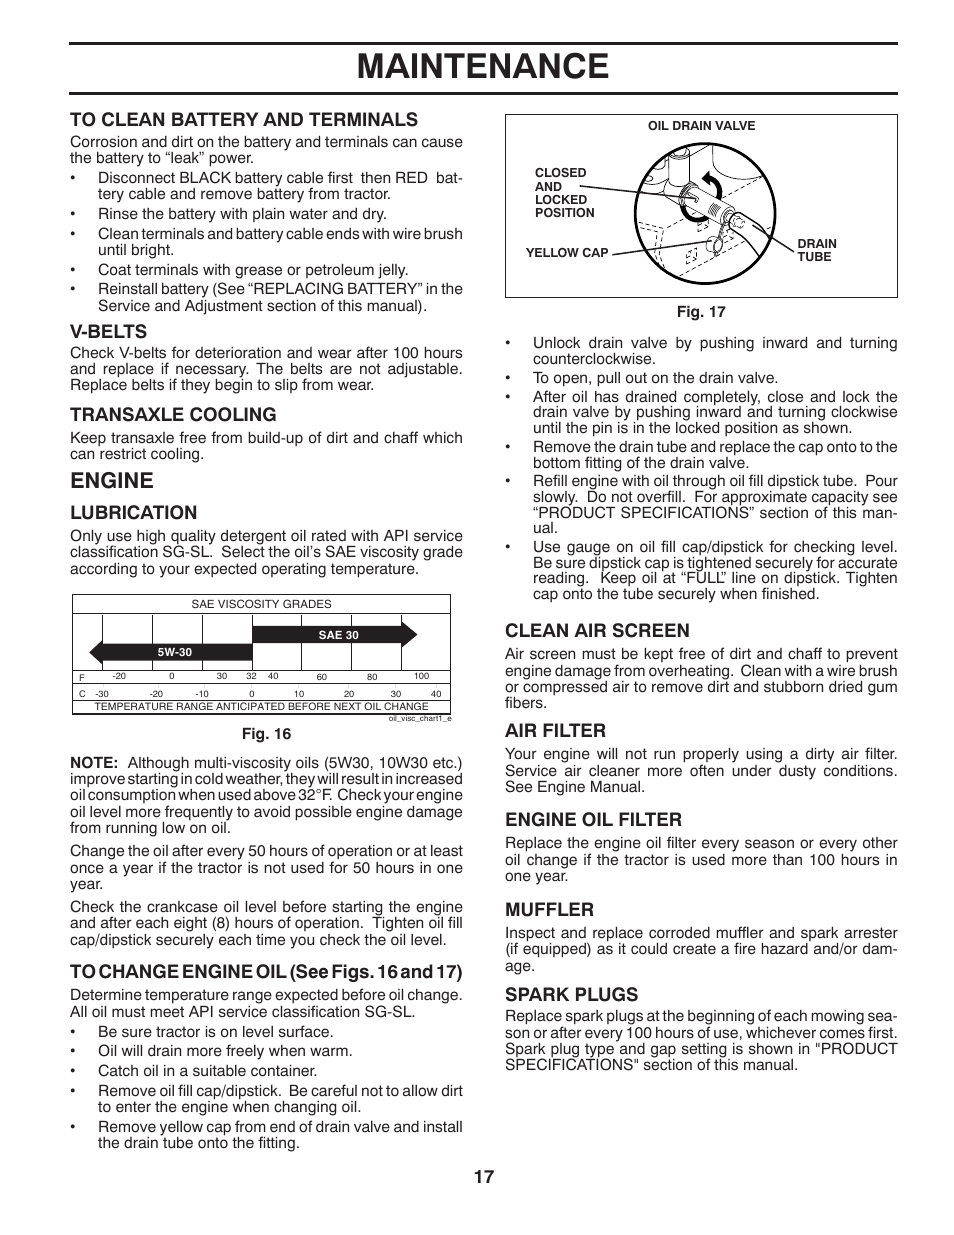 Maintenance, Engine, V-belts | Poulan Pro PP18542 User Manual | Page 17